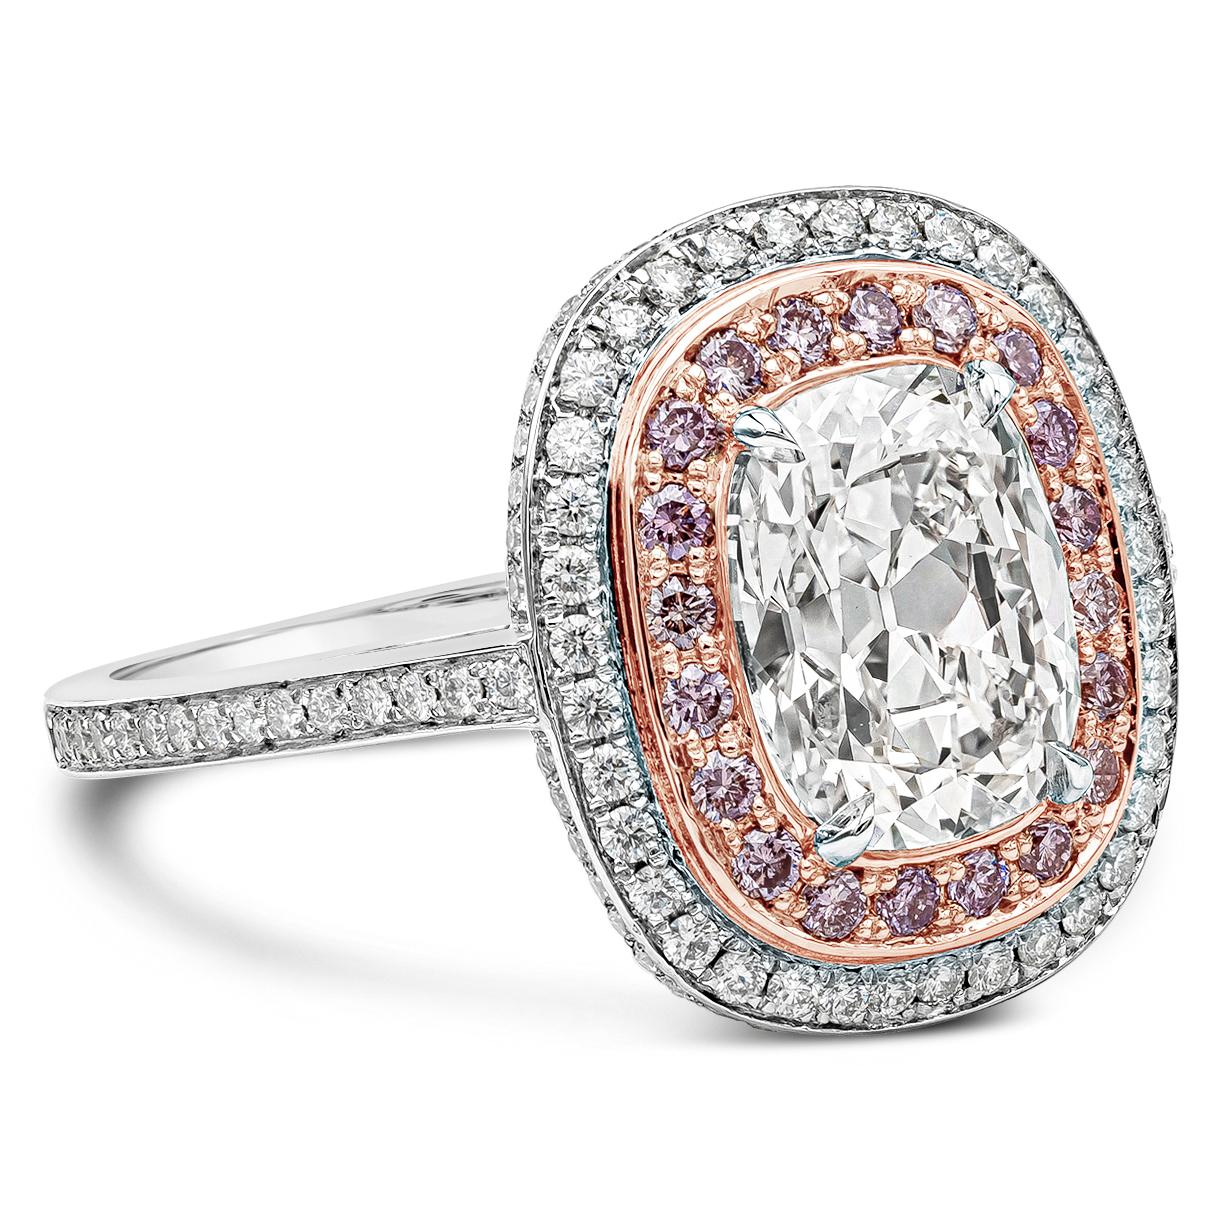 Une bague de fiançailles bien conçue, mettant en valeur un diamant taille coussin de 2,09 carats certifié par le GIA de couleur E et de pureté VVS2. Le diamant central est entouré de diamants ronds roses et blancs dans un double halo. La tige est